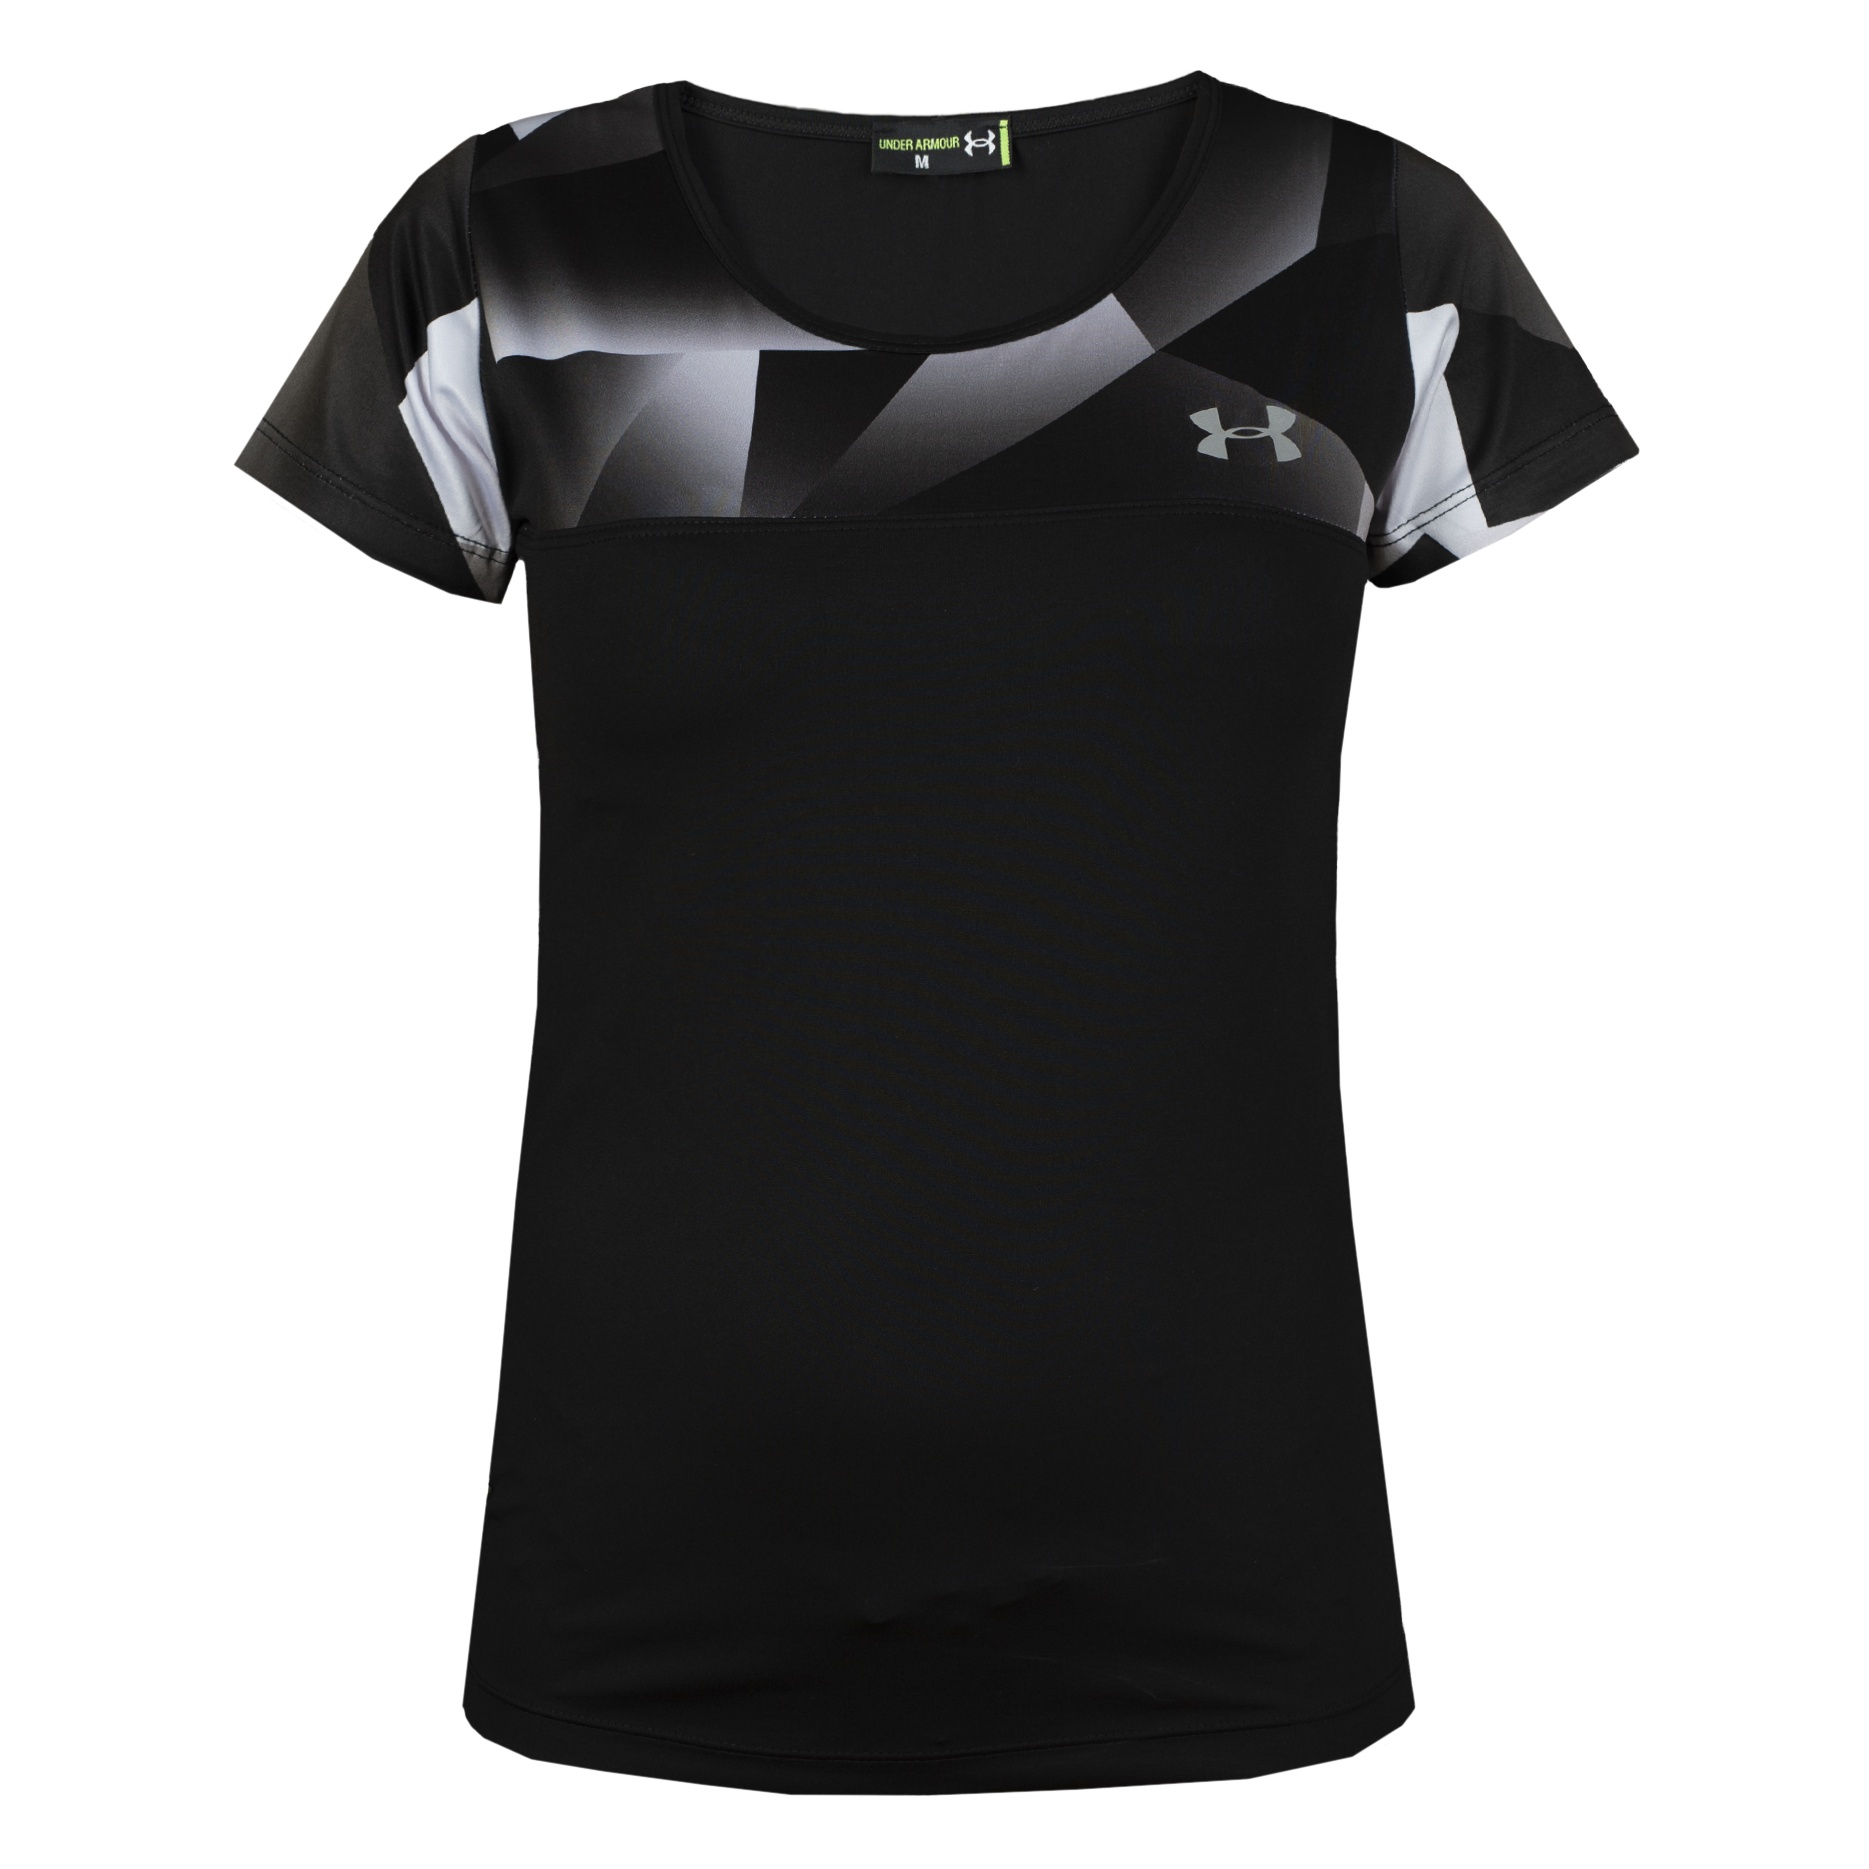 تی شرت ورزشی زنانه کد 2704-018 